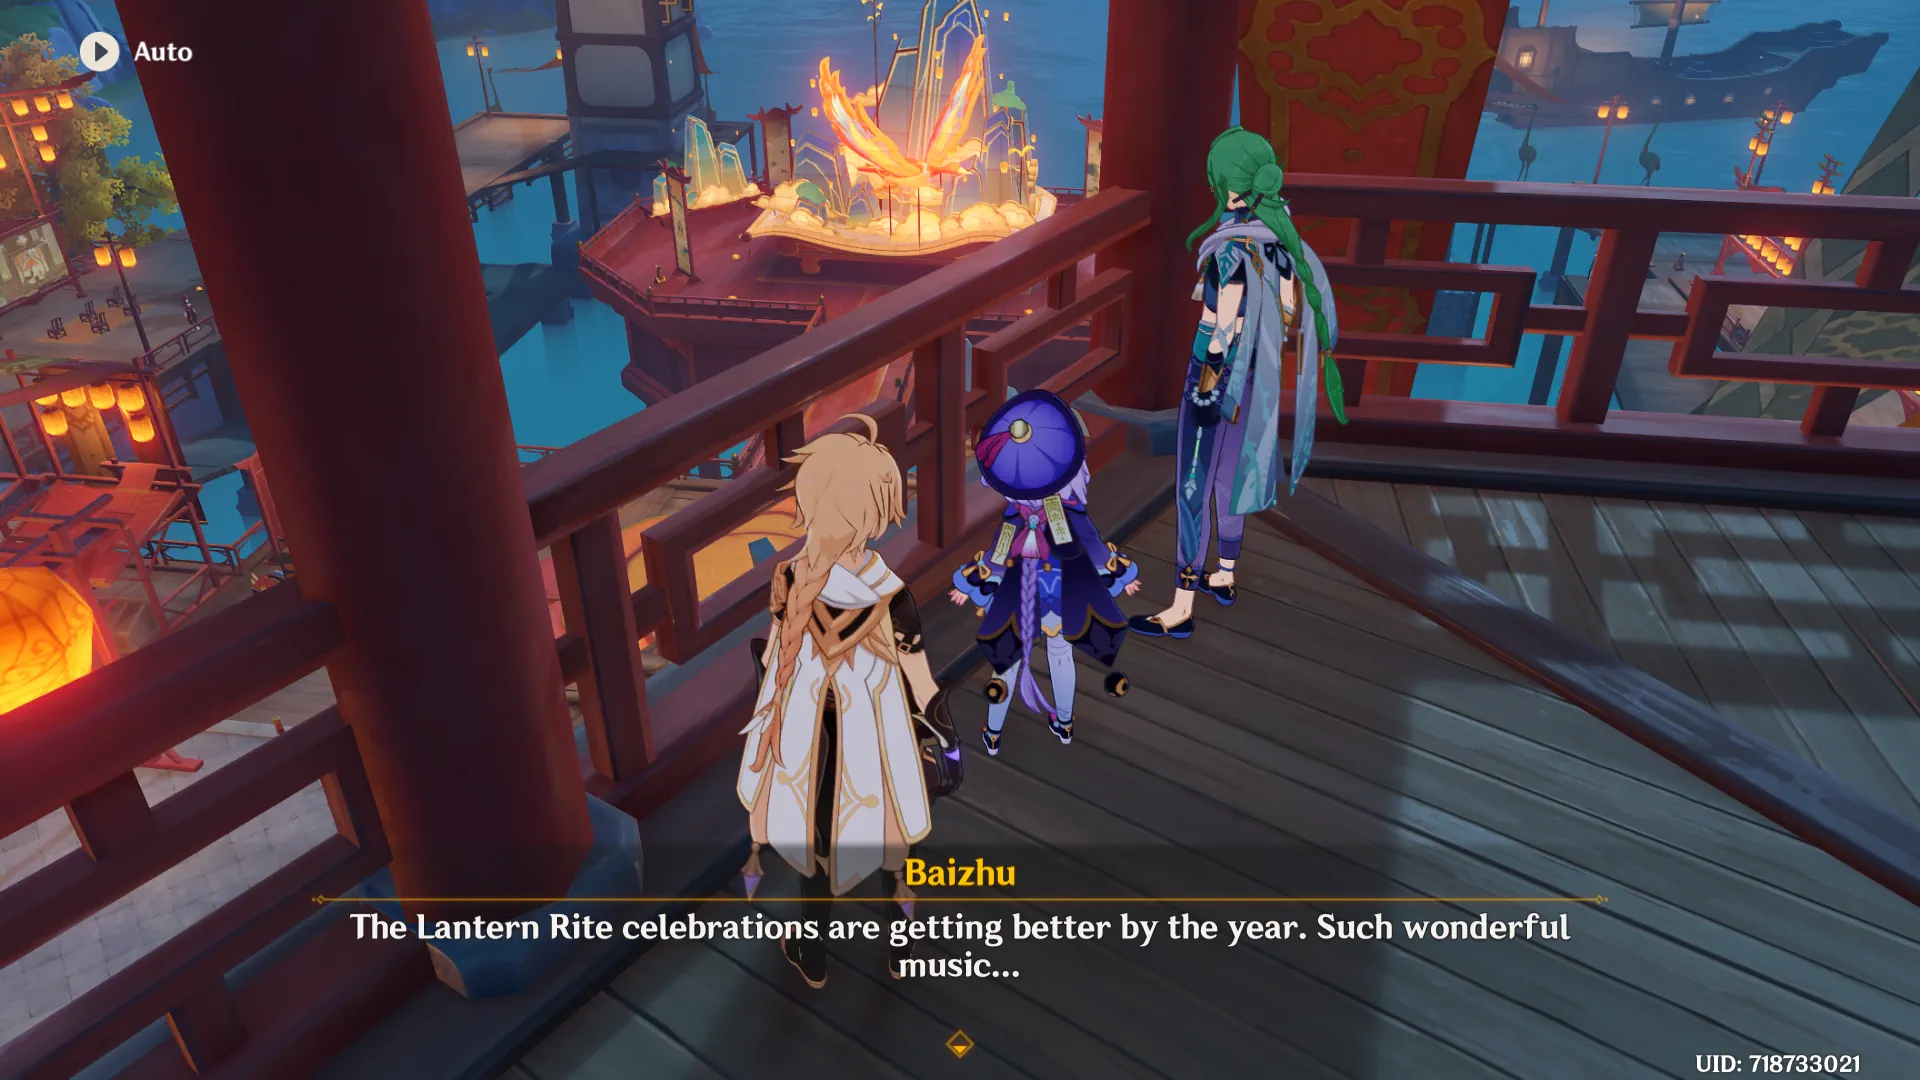 qiqi and baizhu during lantern rite 2023